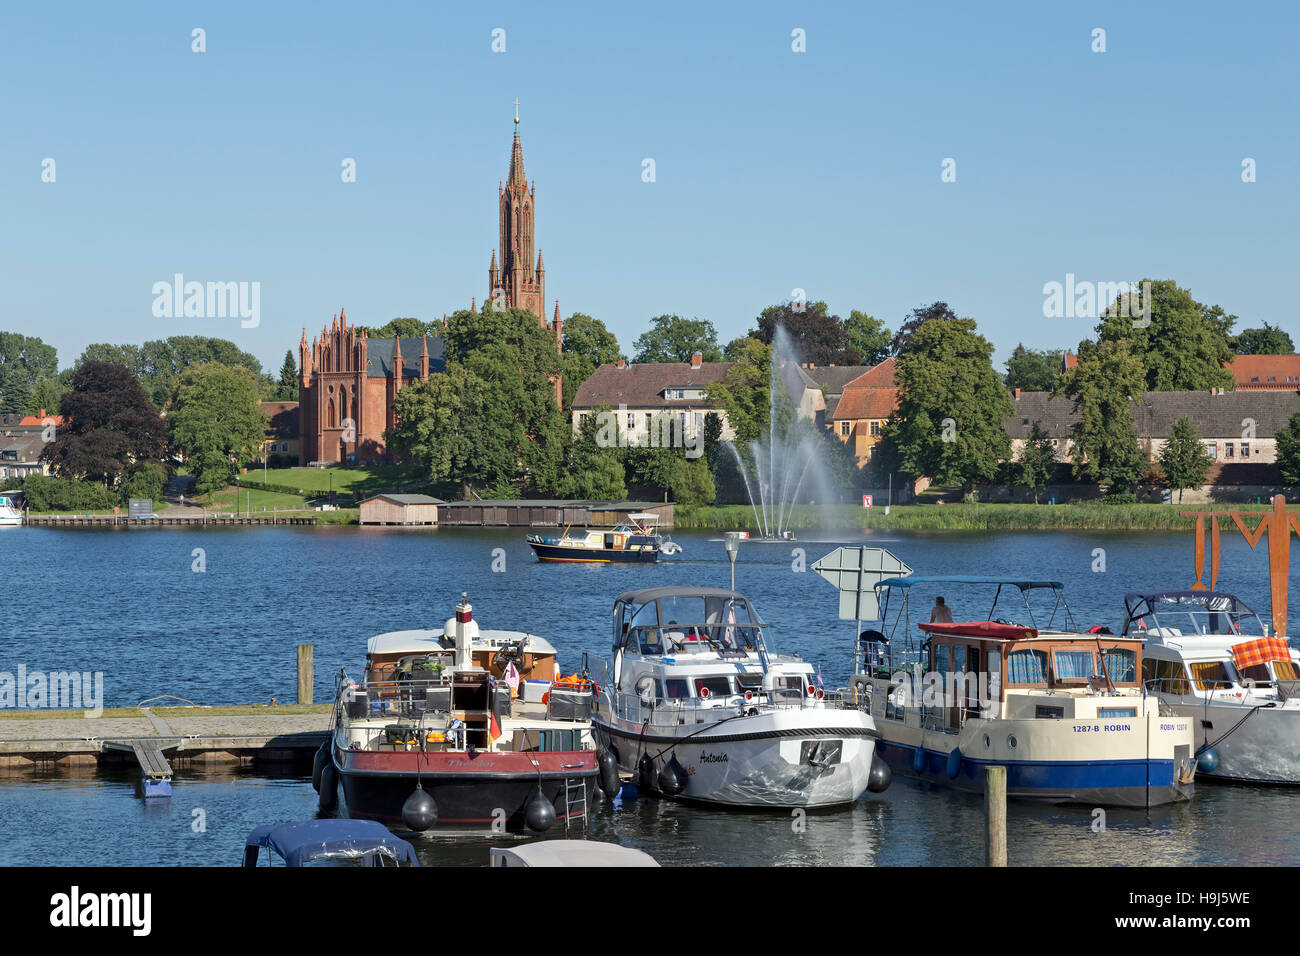 Kirche und See, Malchow, Mecklenburgische Seenplatte, Mecklenburg-West Pomerania, Deutschland Stockfoto